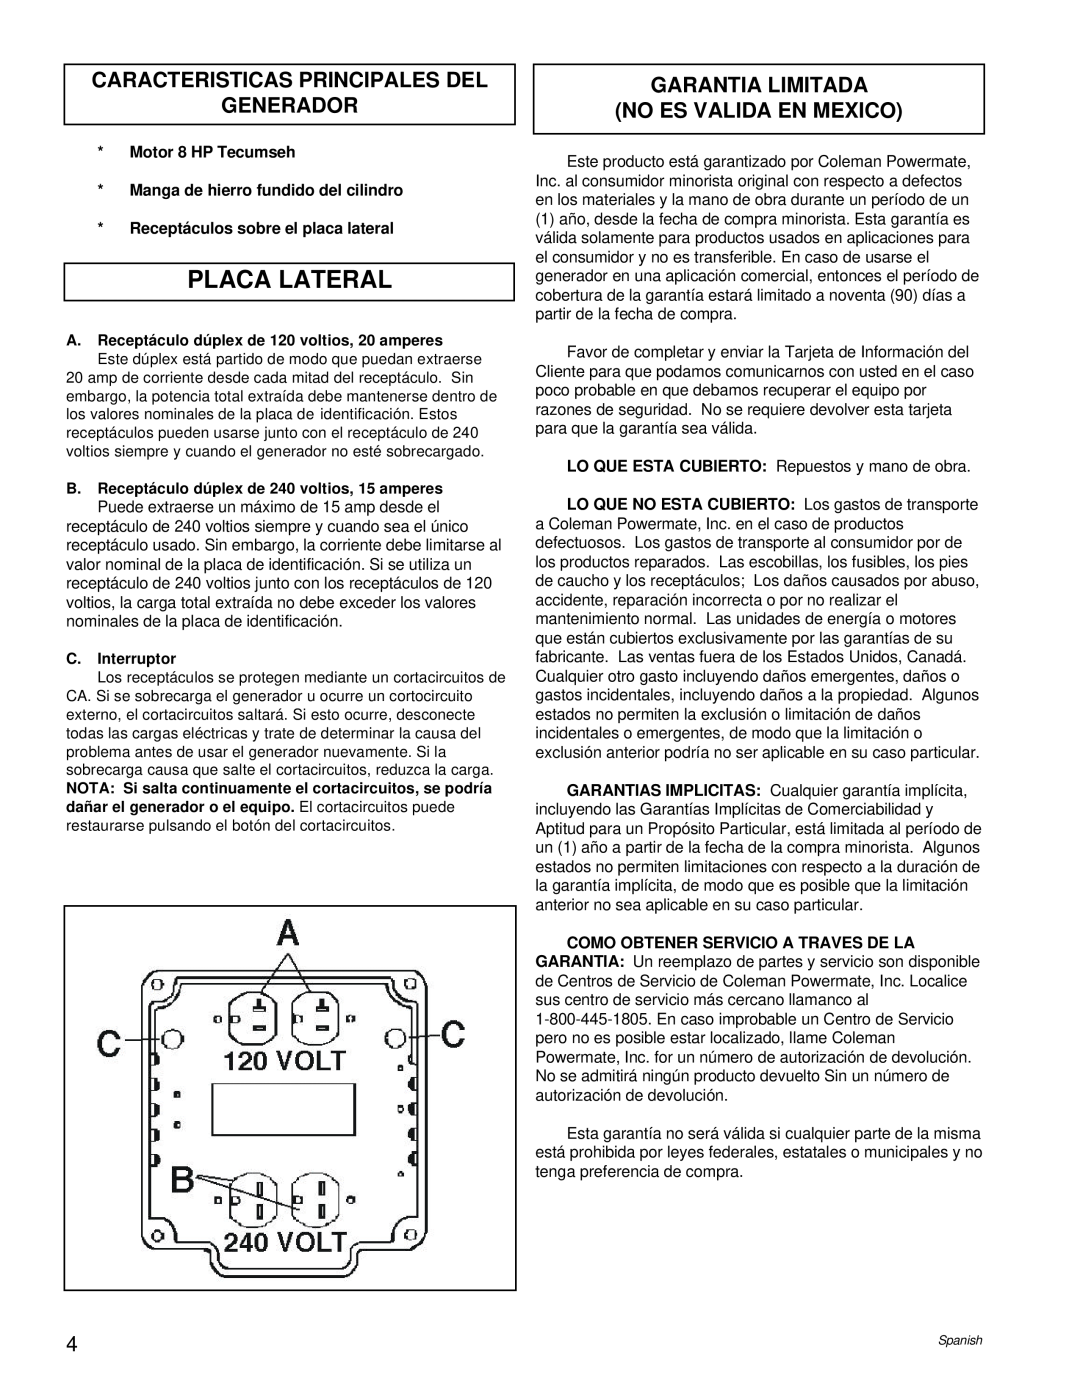 Powermate PM0524000.01 Placa Lateral, Caracteristicas Principales Del Generador, Garantia Limitada No Es Valida En Mexico 